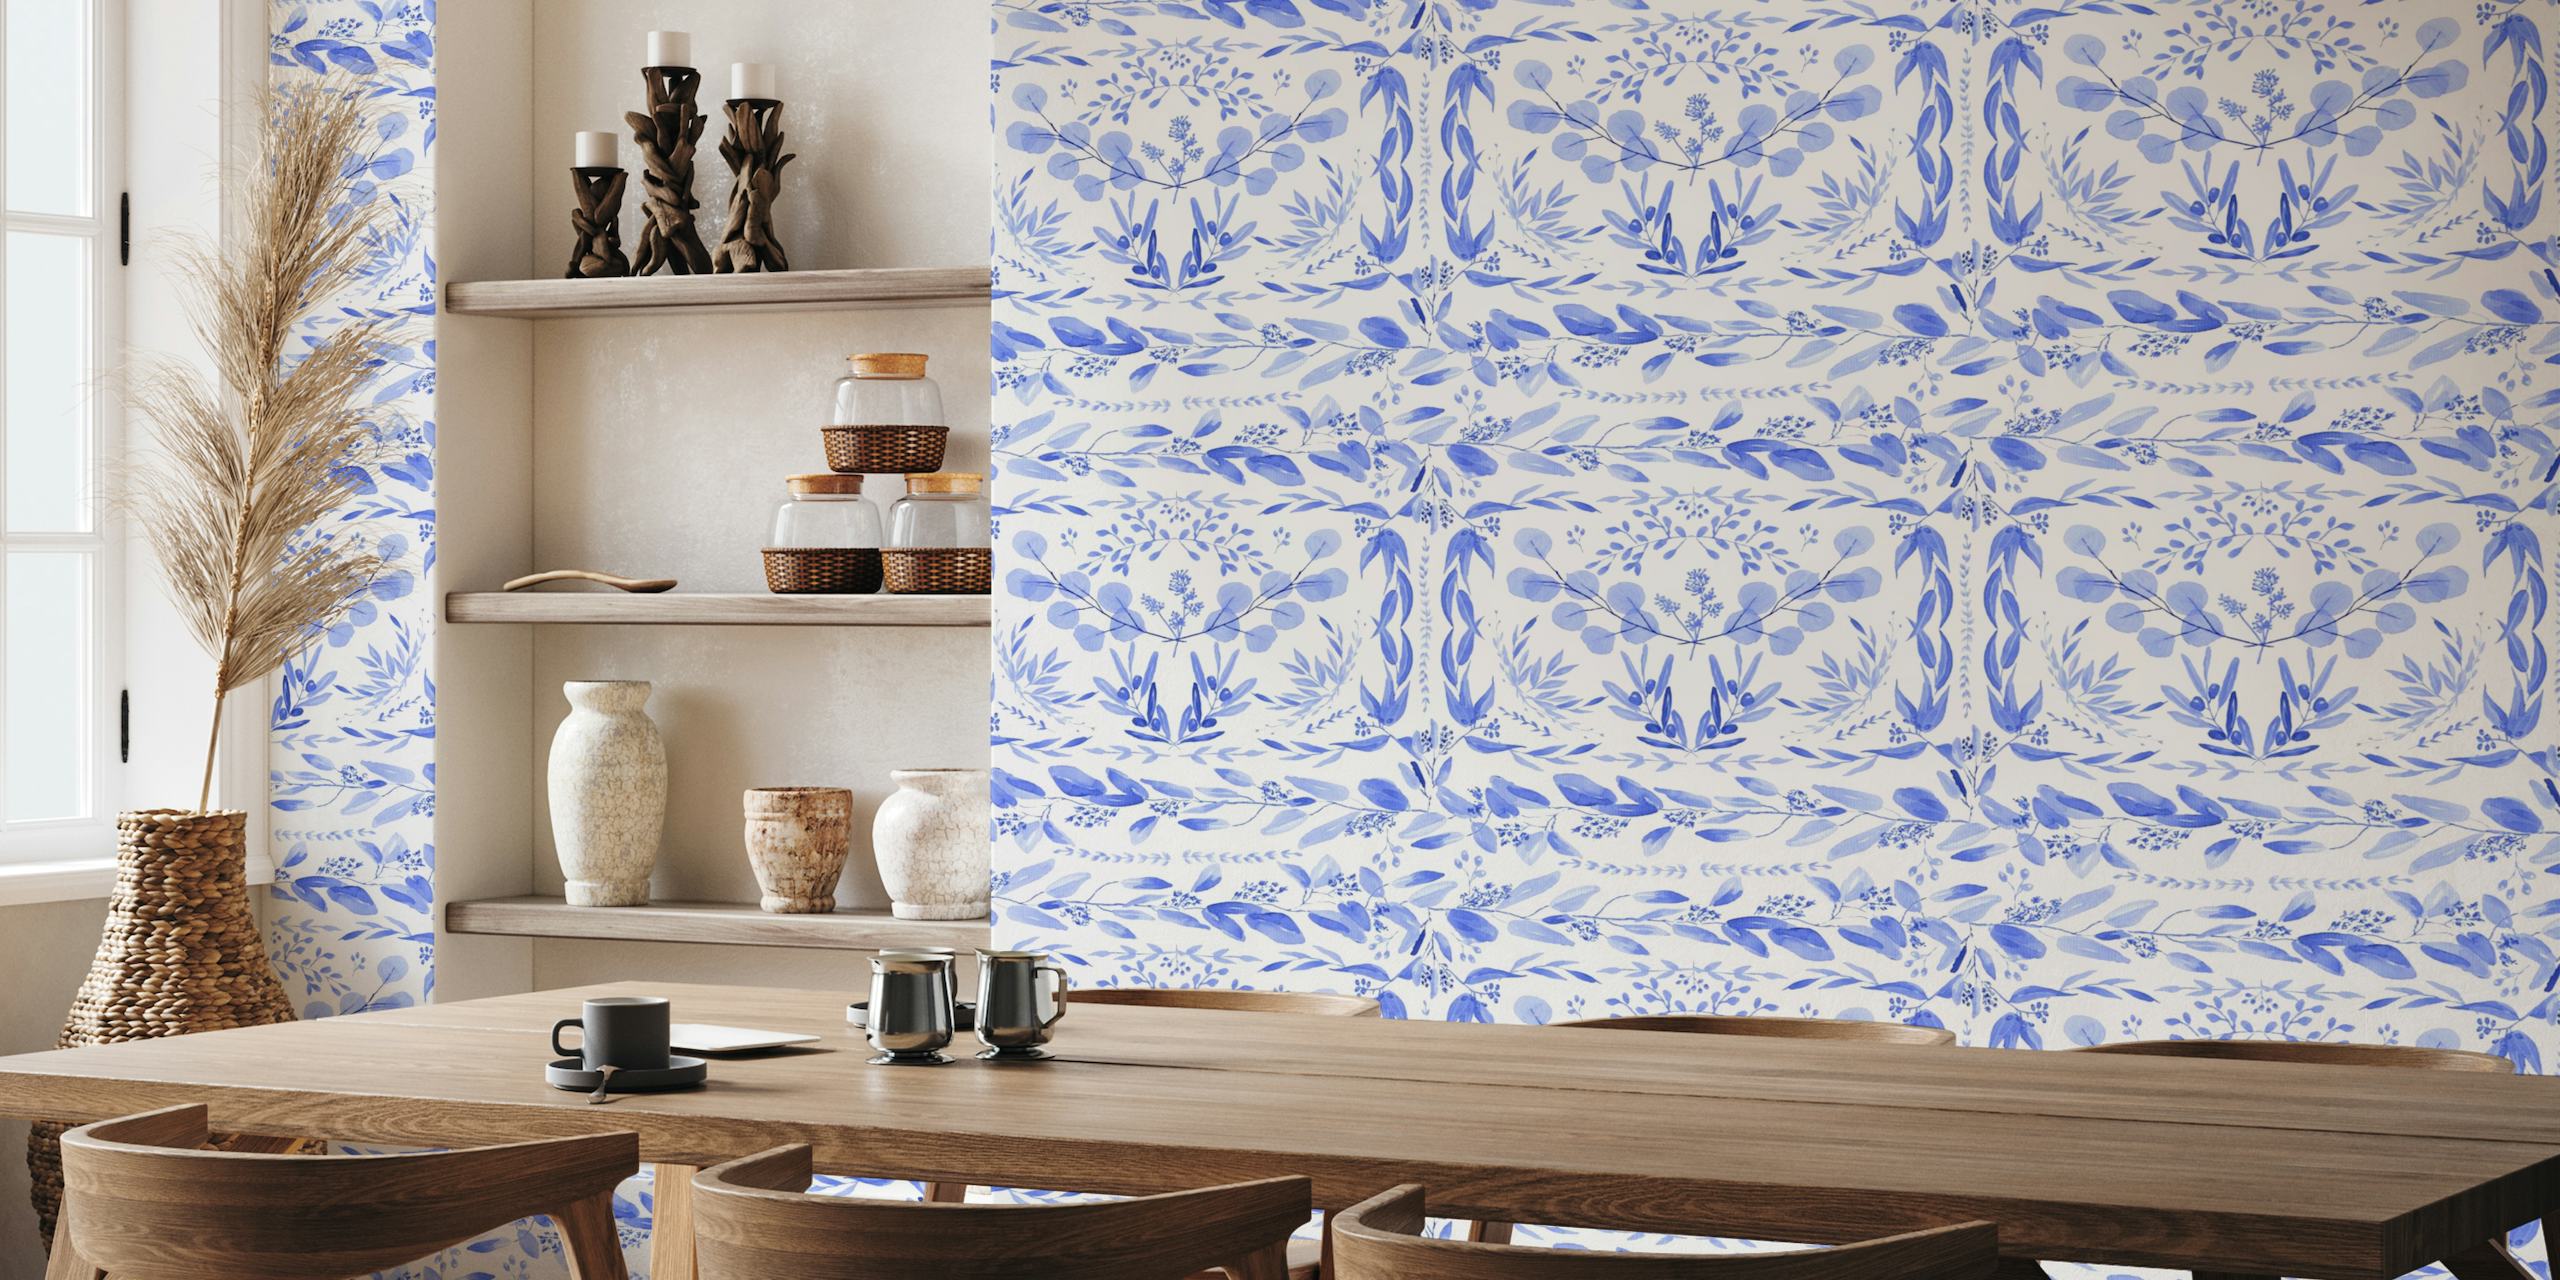 fotomural vinílico de parede com padrão floral mediterrâneo azul e branco.